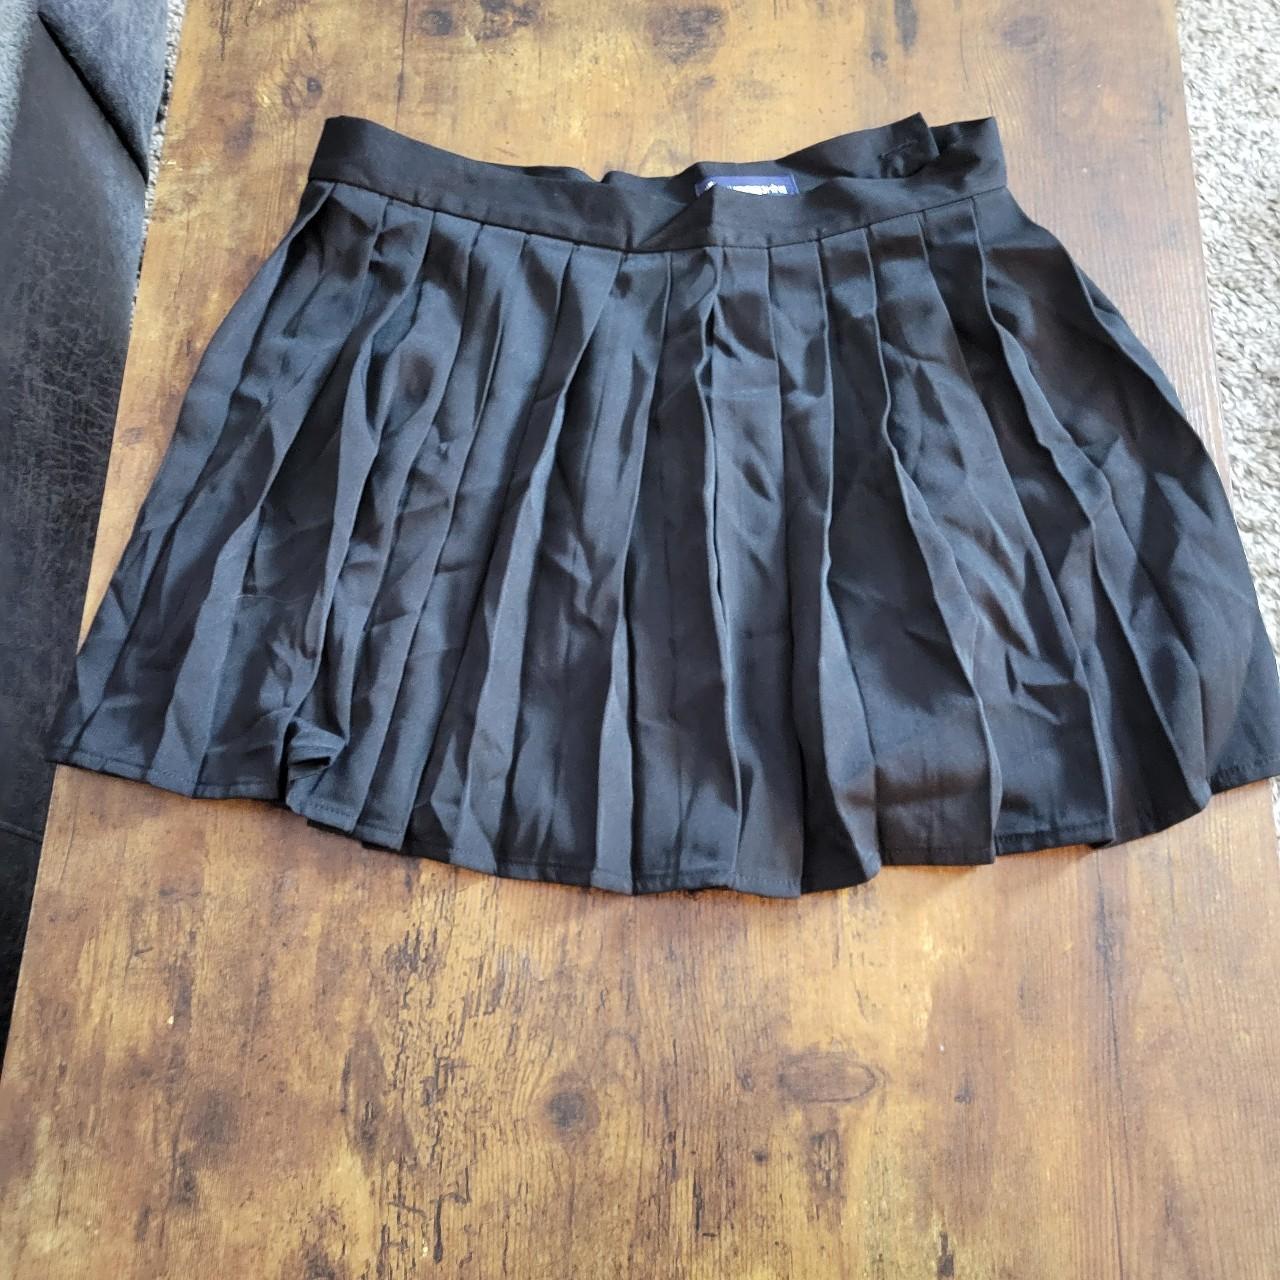 Black pleated skirt - girls size xxxl 32 inch waist - Depop